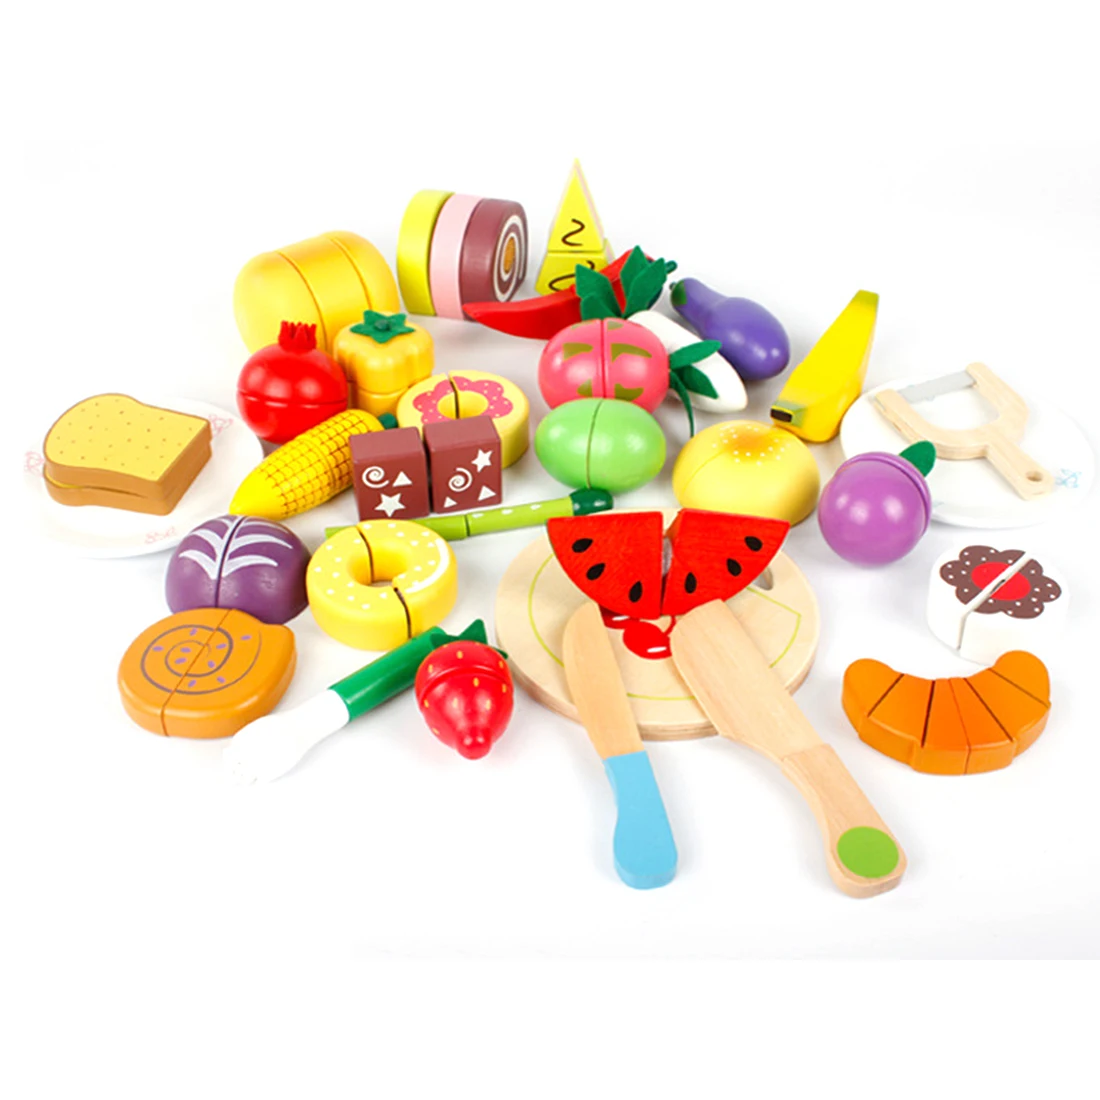 32 шт./компл. деревянный детей игрушечный миксер играть в игрушки резки фруктов раннего развития образования игрушки для детей Детские-Цвет